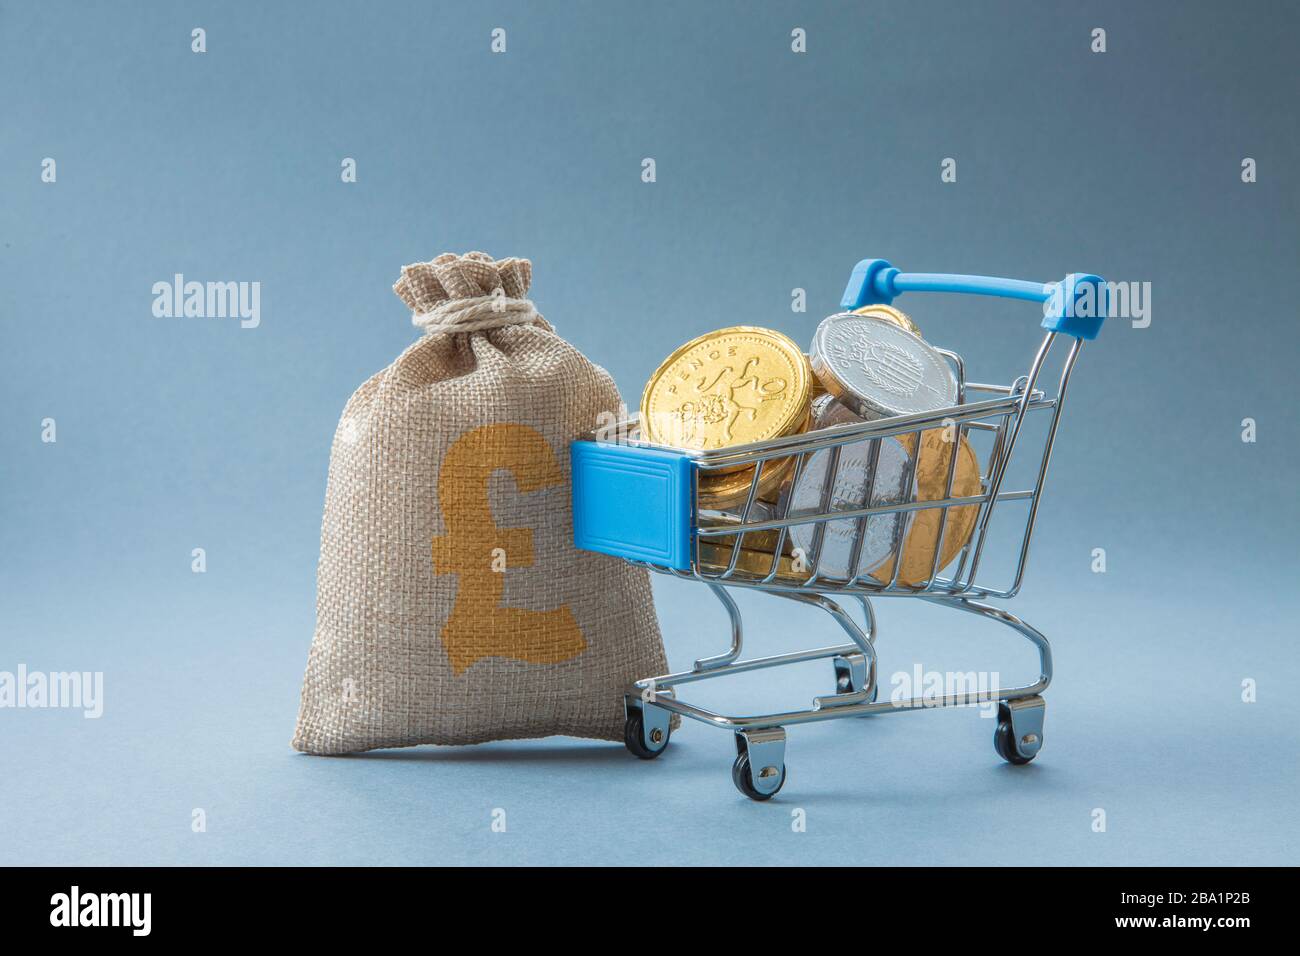 Ein Konzept eines Supermarkt-Einkaufswagens oder -Wagens voller Bargeld, Münzen und Geld, das die Verbraucherausgaben in Einzelhandelsgeschäften mit Kopierfläche repräsentiert Stockfoto